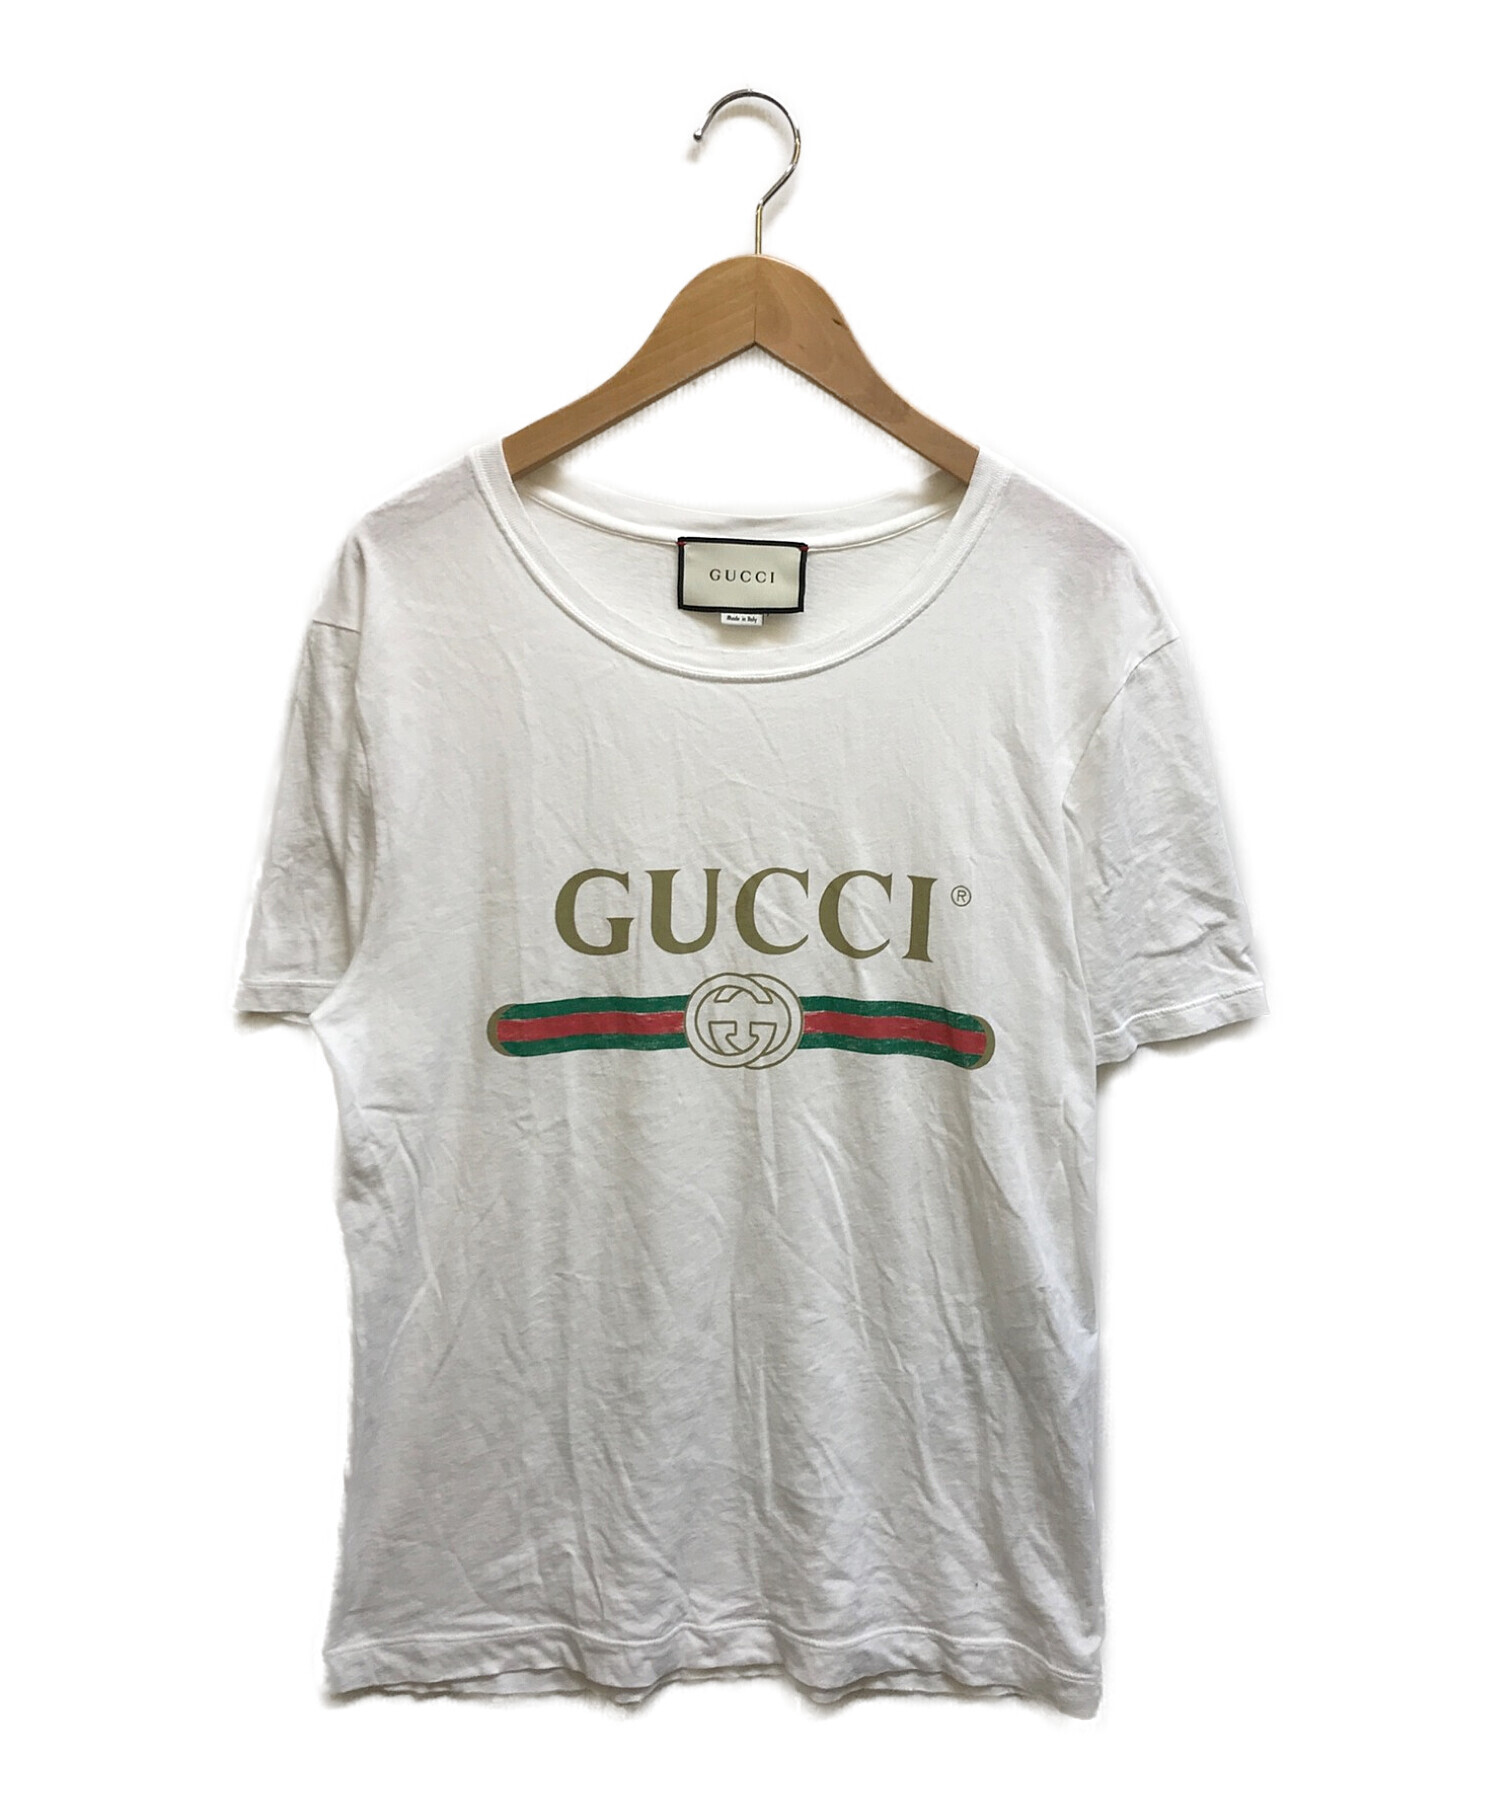 GUCCI (グッチ) ウォッシュドオーバーサイズ Tシャツ ホワイト サイズ:XS